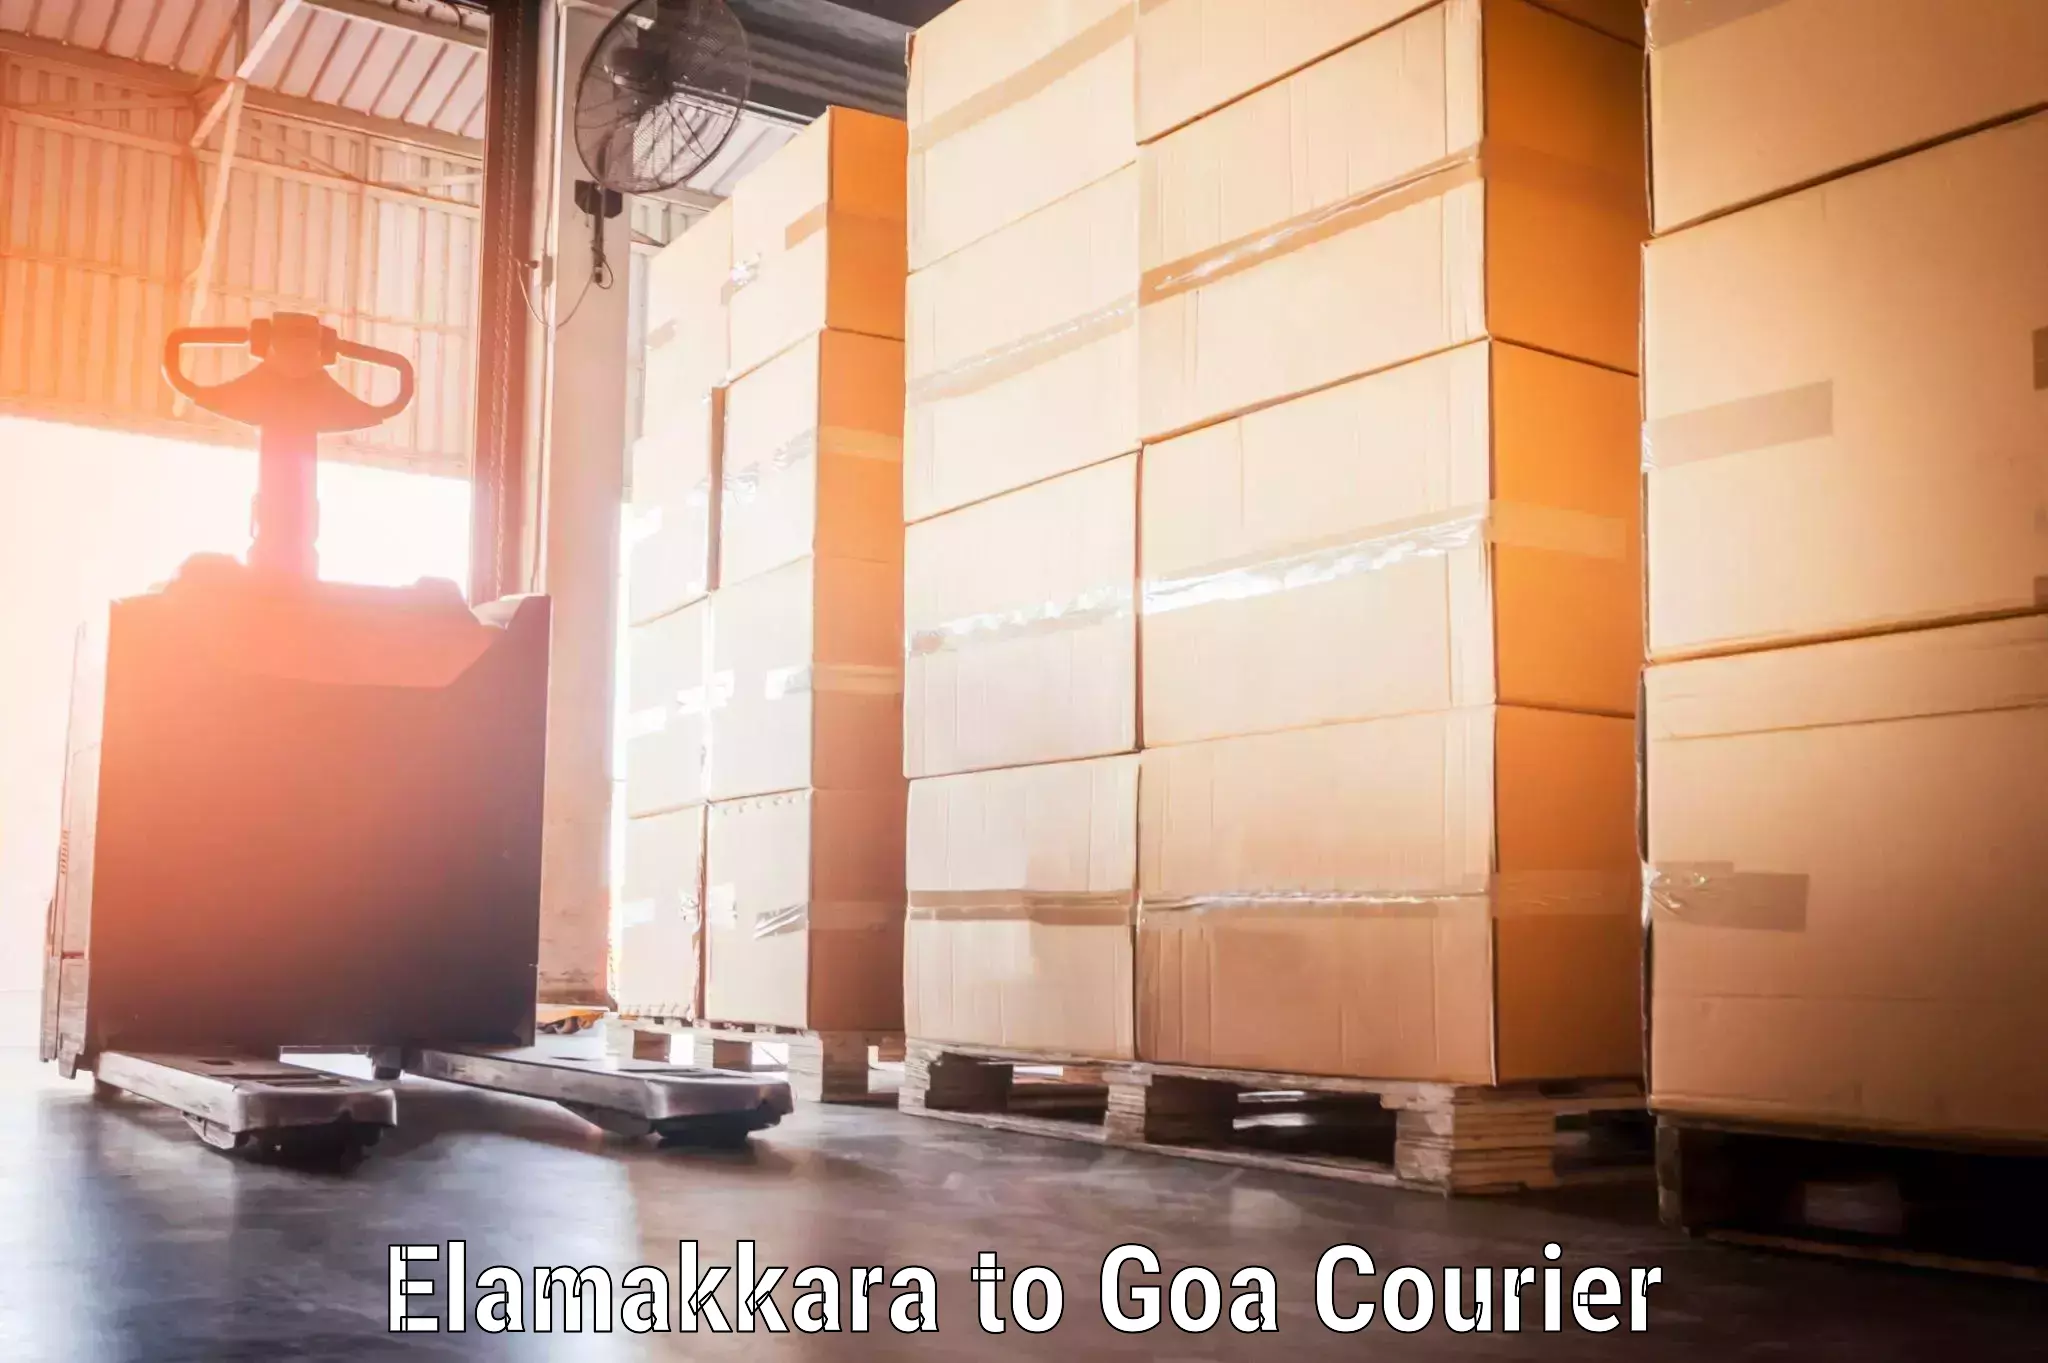 Door-to-door baggage service in Elamakkara to South Goa